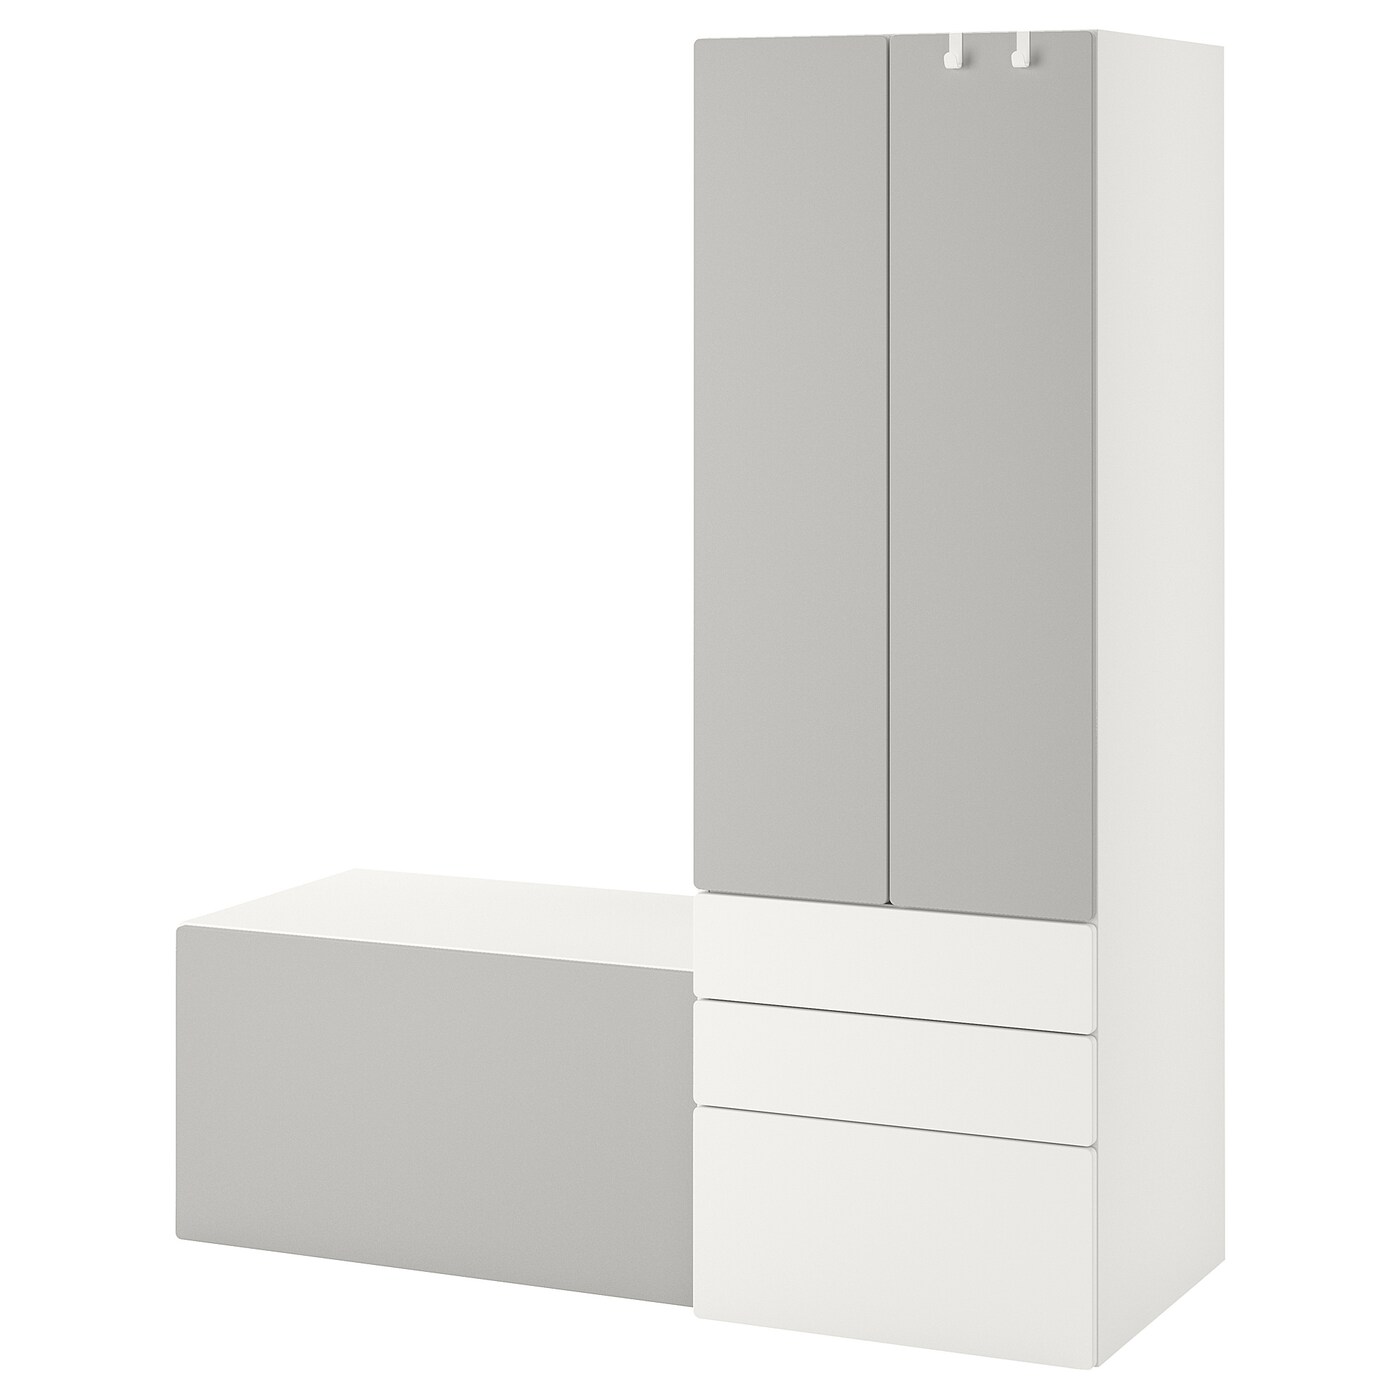 Шкаф - PLATSA/ SMÅSTAD / SMАSTAD  IKEA/ ПЛАТСА/СМОСТАД  ИКЕА, 150x57x181 см, белый/серый